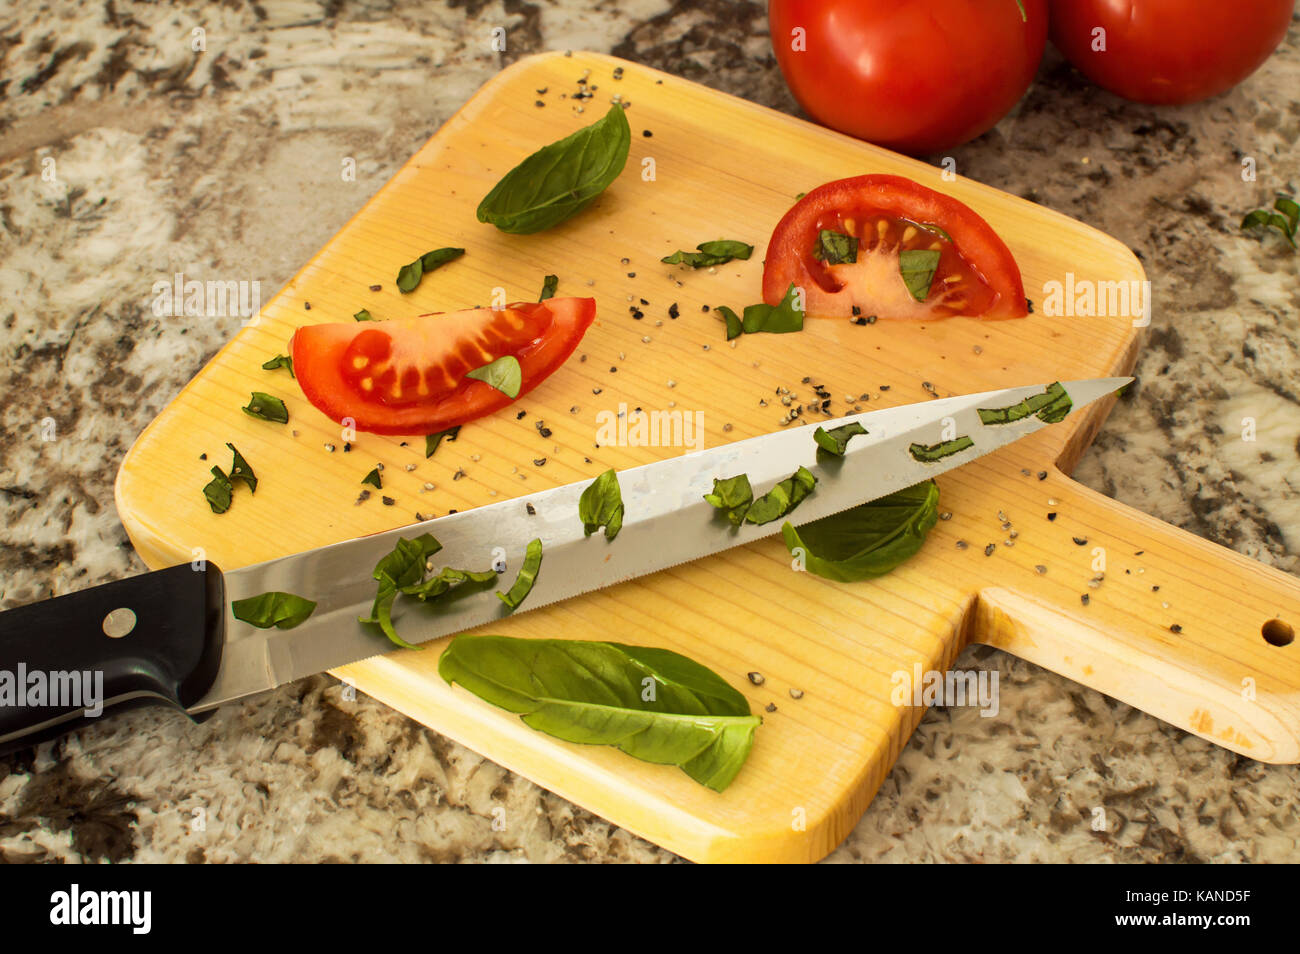 Eine in Scheiben geschnittene Tomaten mit Basilikum auf einem Schneidebrett mit einem kochmesser und ein Bündel von Tomaten auf der Rebe. Stockfoto